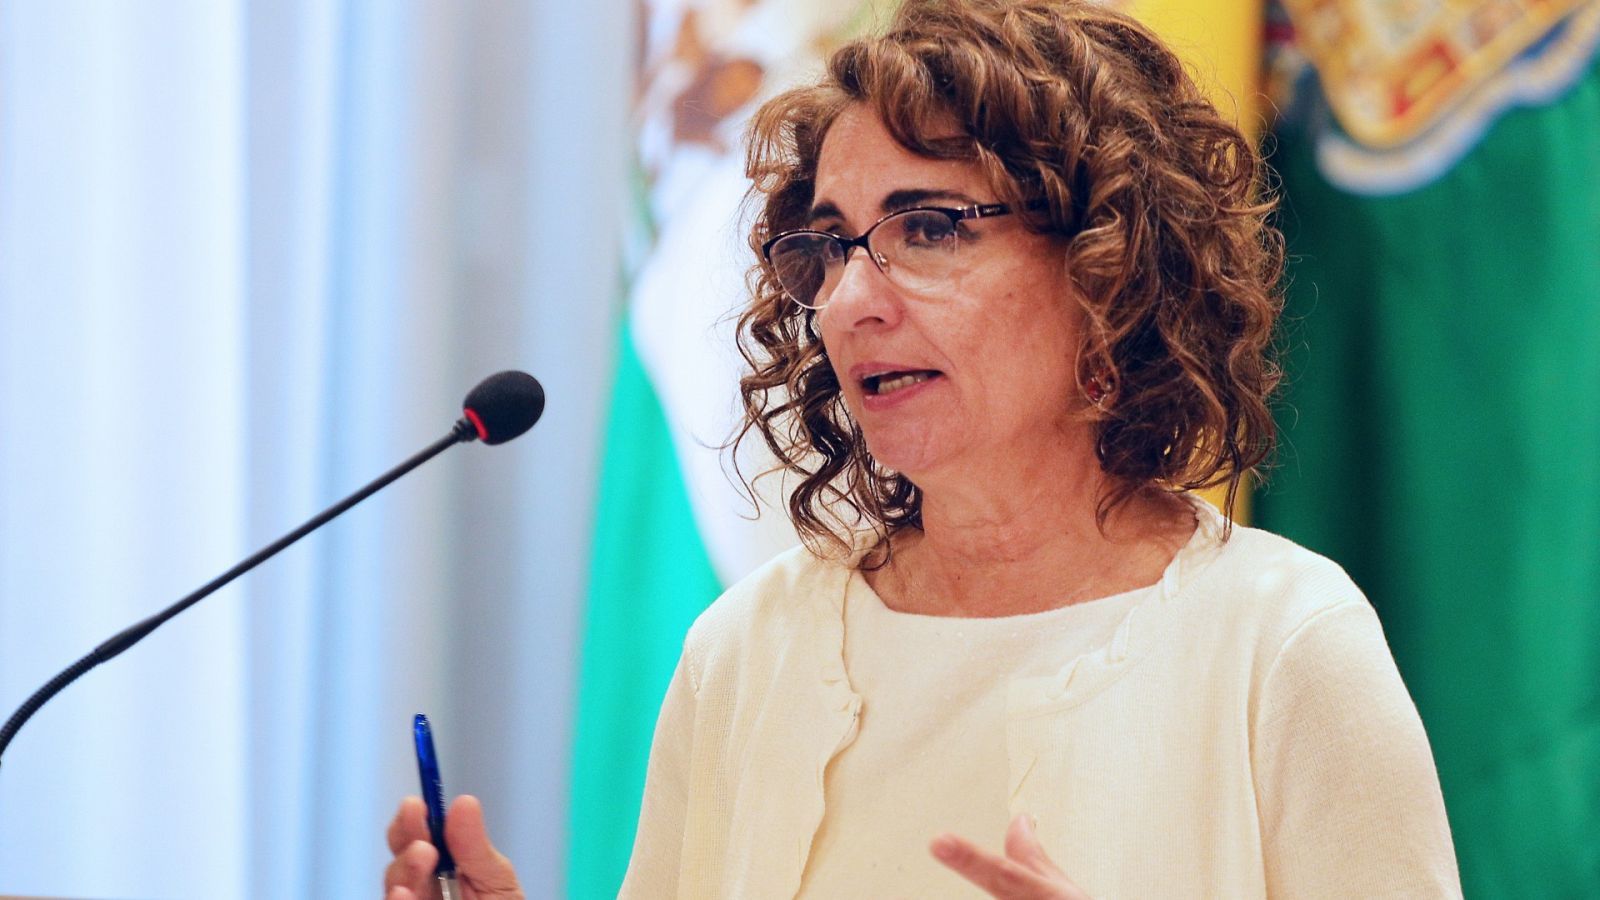 La ministra de Hacienda y Función Pública, María Jesús Montero, ha recibido críticas por decir que "los abuelos no quieren las pensiones para ellos" sino para ayudar a su familia.